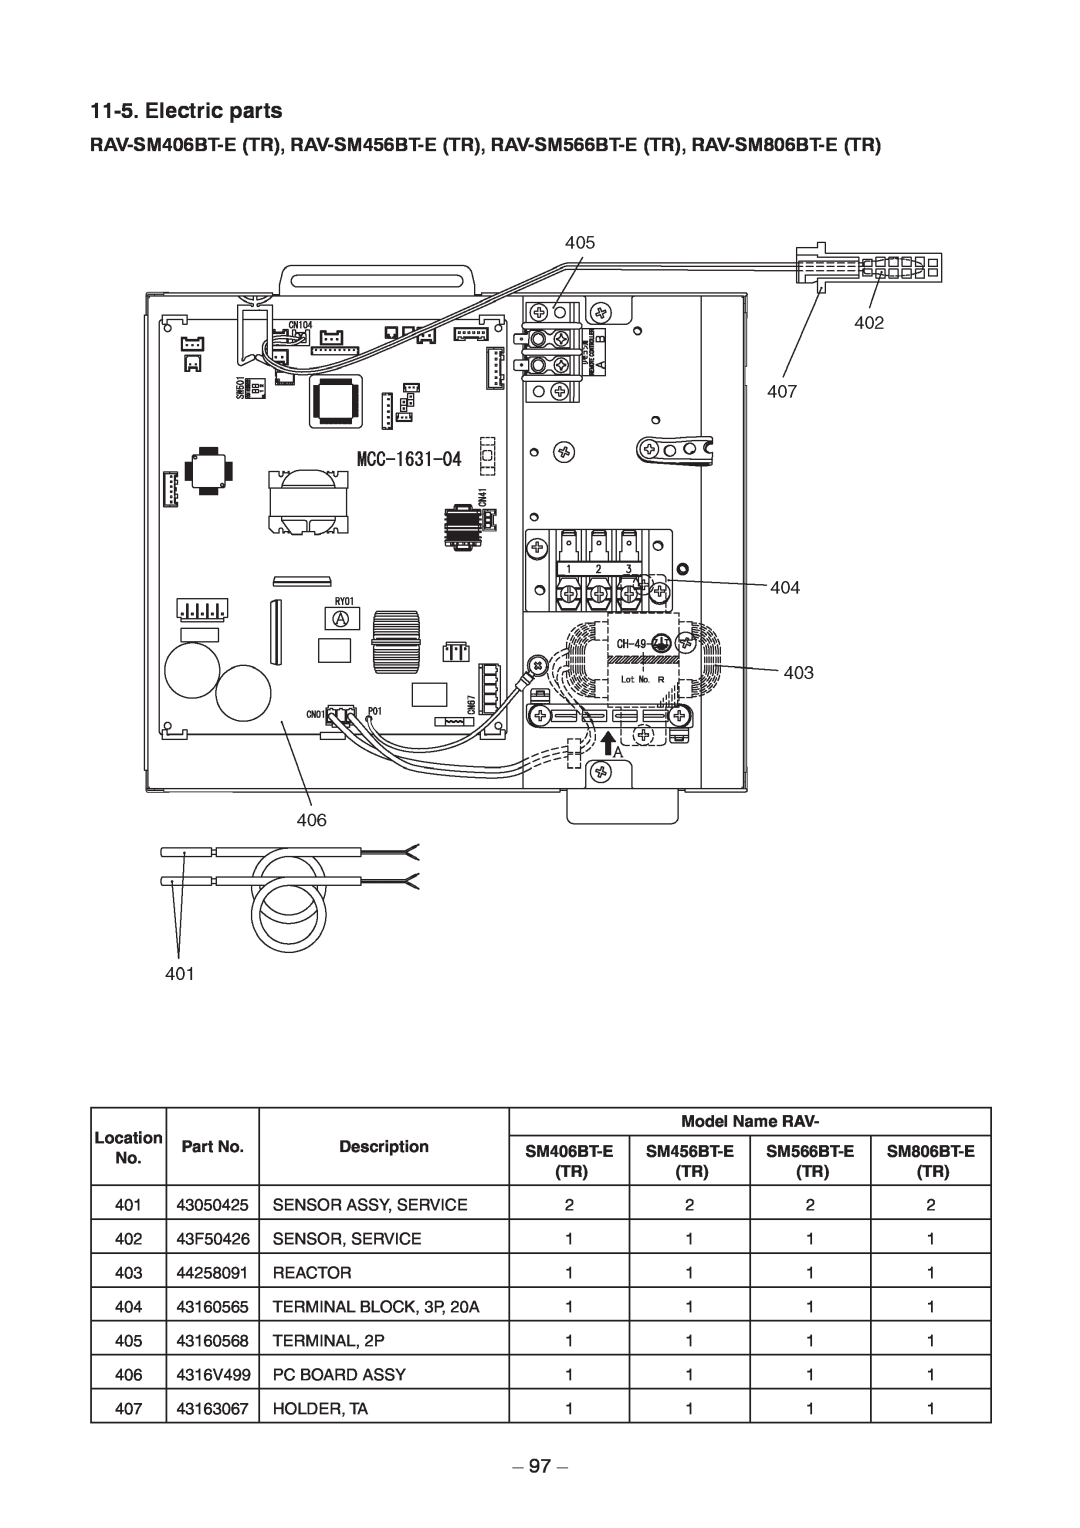 Toshiba RAV-SM1106BT-TR, RAV-SM406BT-TR Location, Model Name RAV, Description, SM406BT-E, SM456BT-E, SM566BT-E 